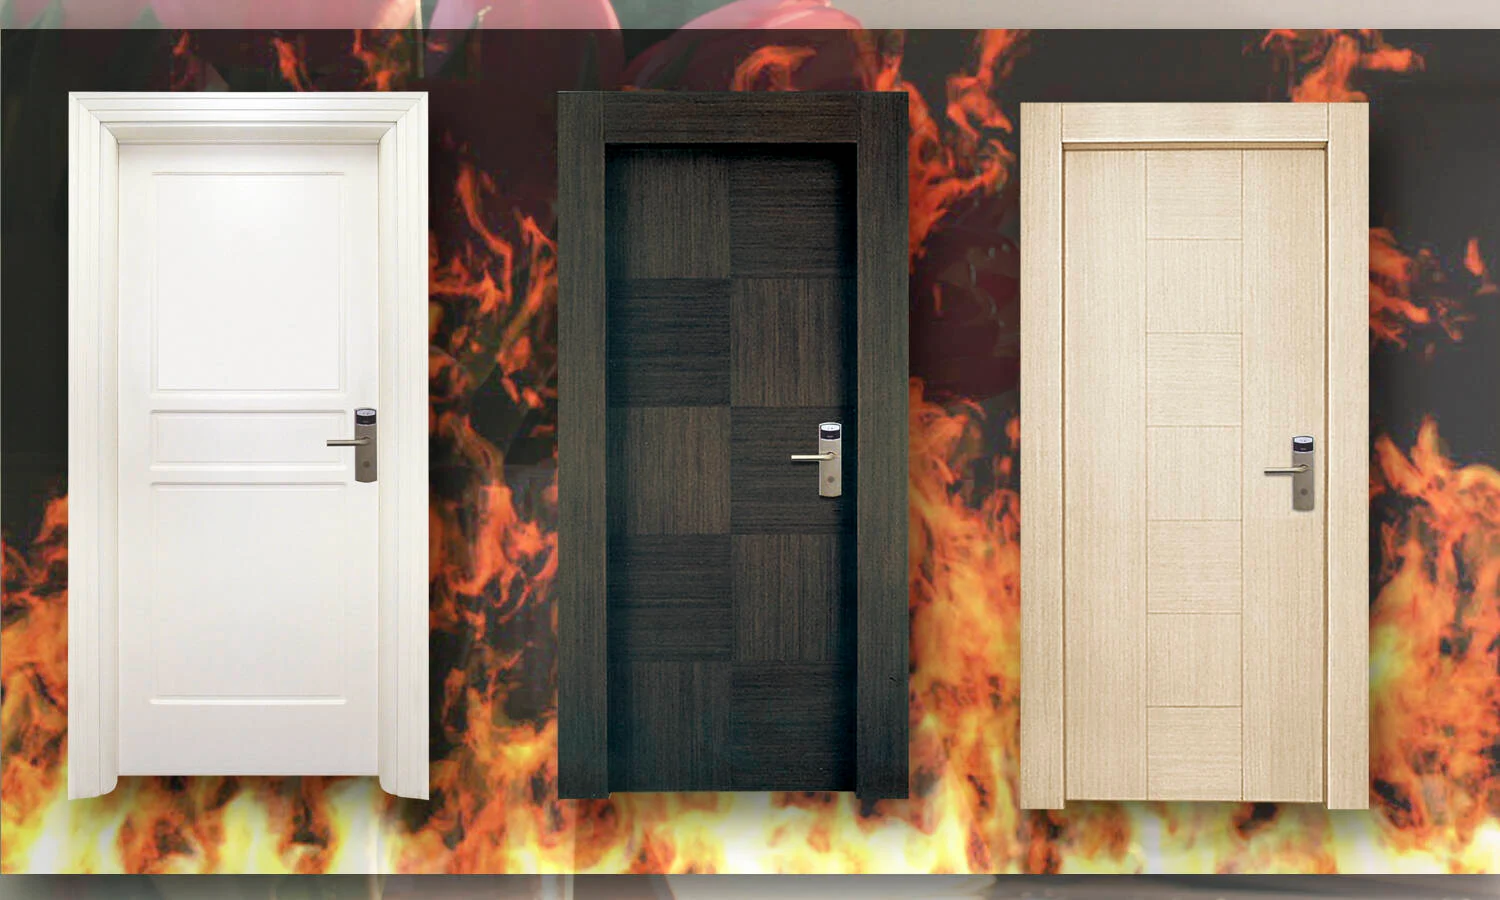 Tìm hiểu từ A-Z các tiêu chuẩn cửa gỗ chống cháy